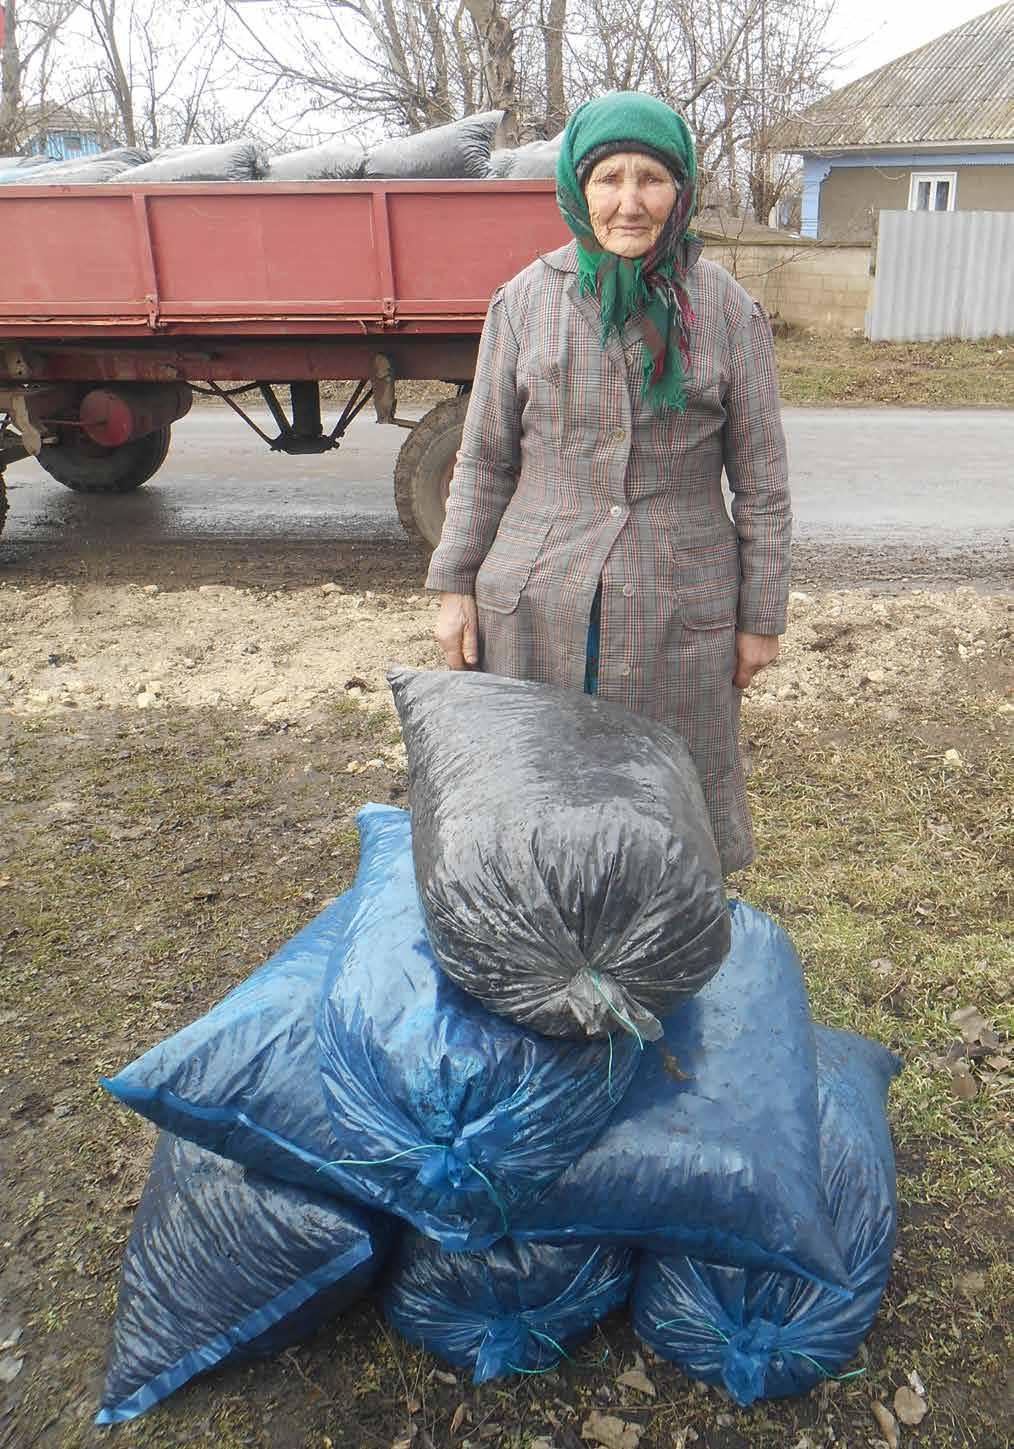 Voedselpakketten Chisinau 200 ouderen die ook naar de gaarkeuken in Chisinau komen, hebben in december in het kader van het winterproject, een mooi voedselpakket ontvangen.